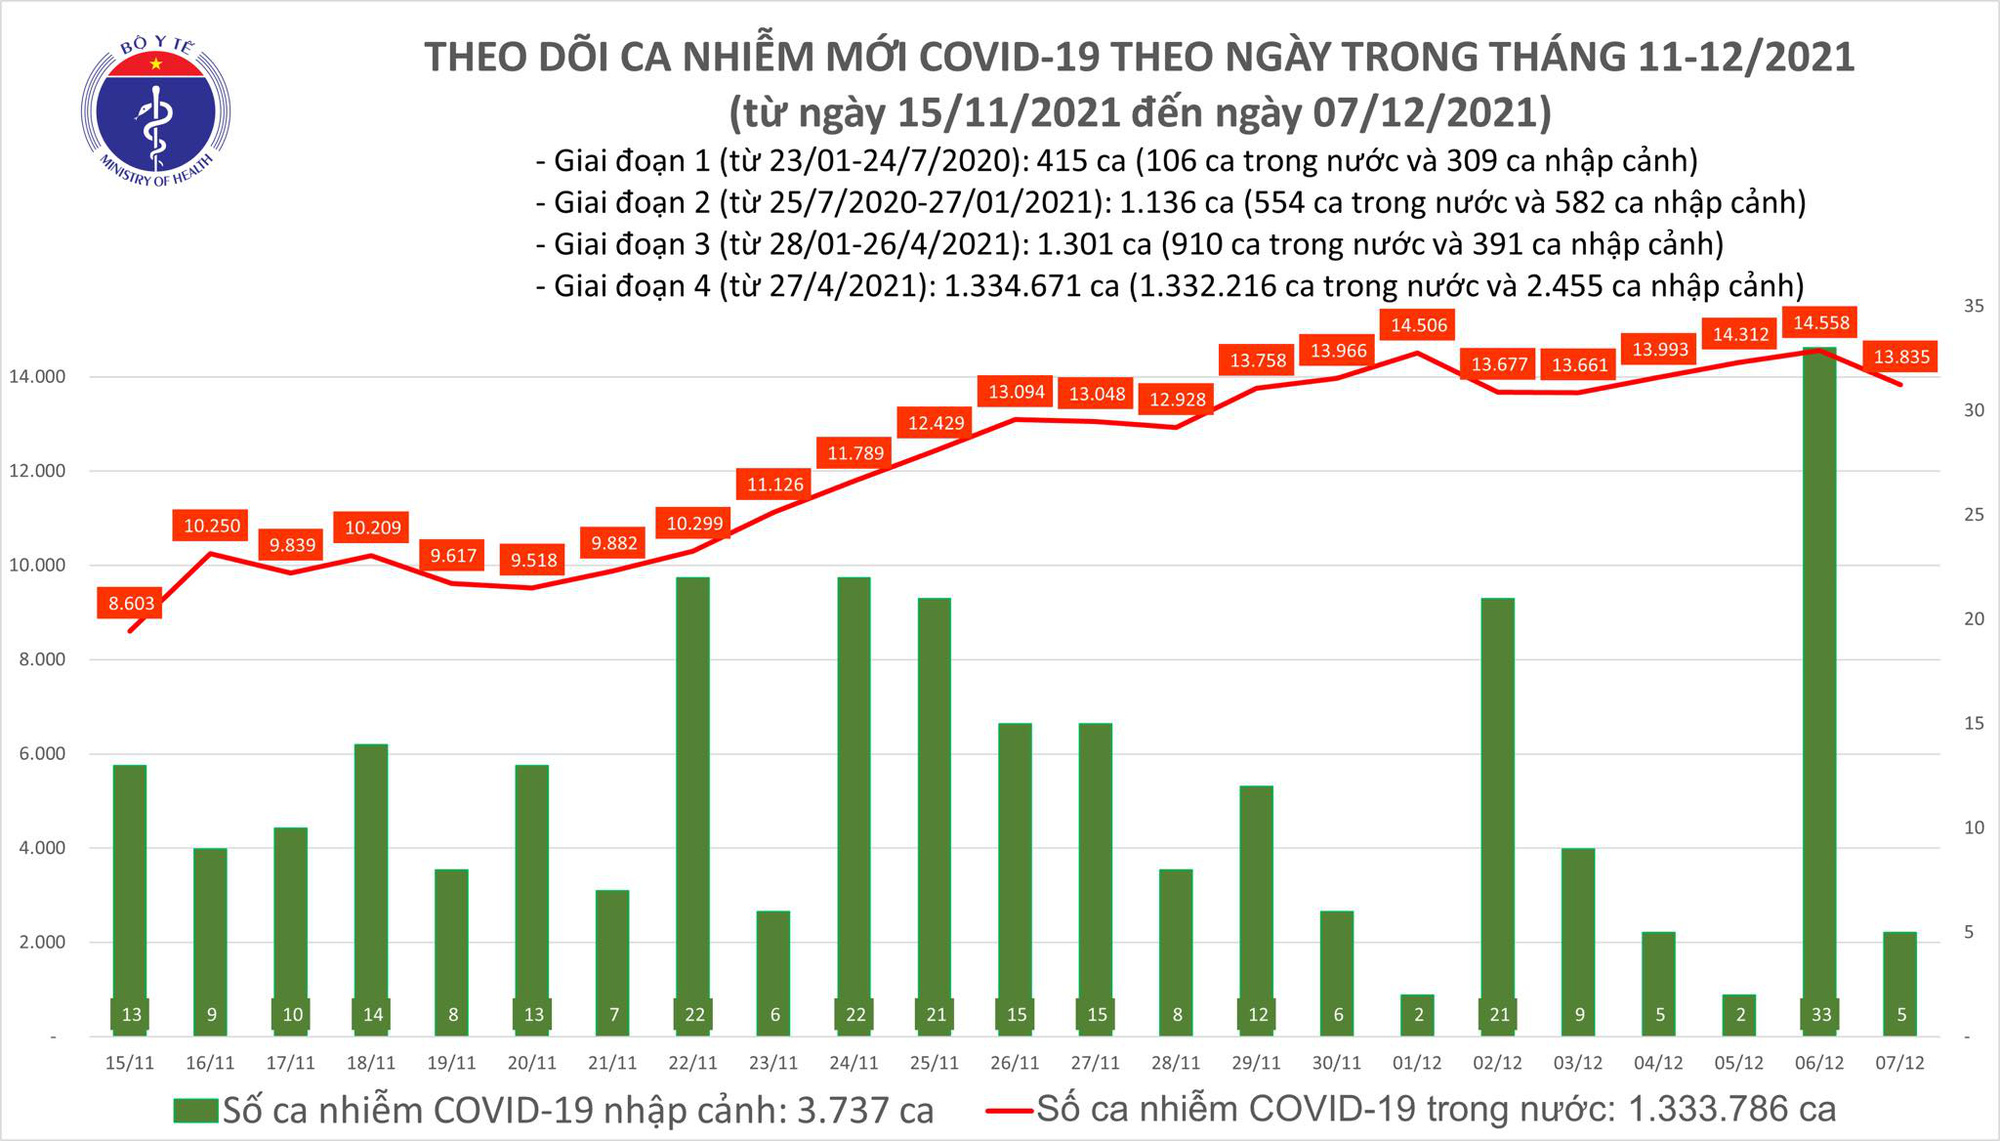 Covid-19 ngày 7/12: Hà Nội và các tỉnh, TP phía Nam vẫn diễn biến nóng - Ảnh 1.